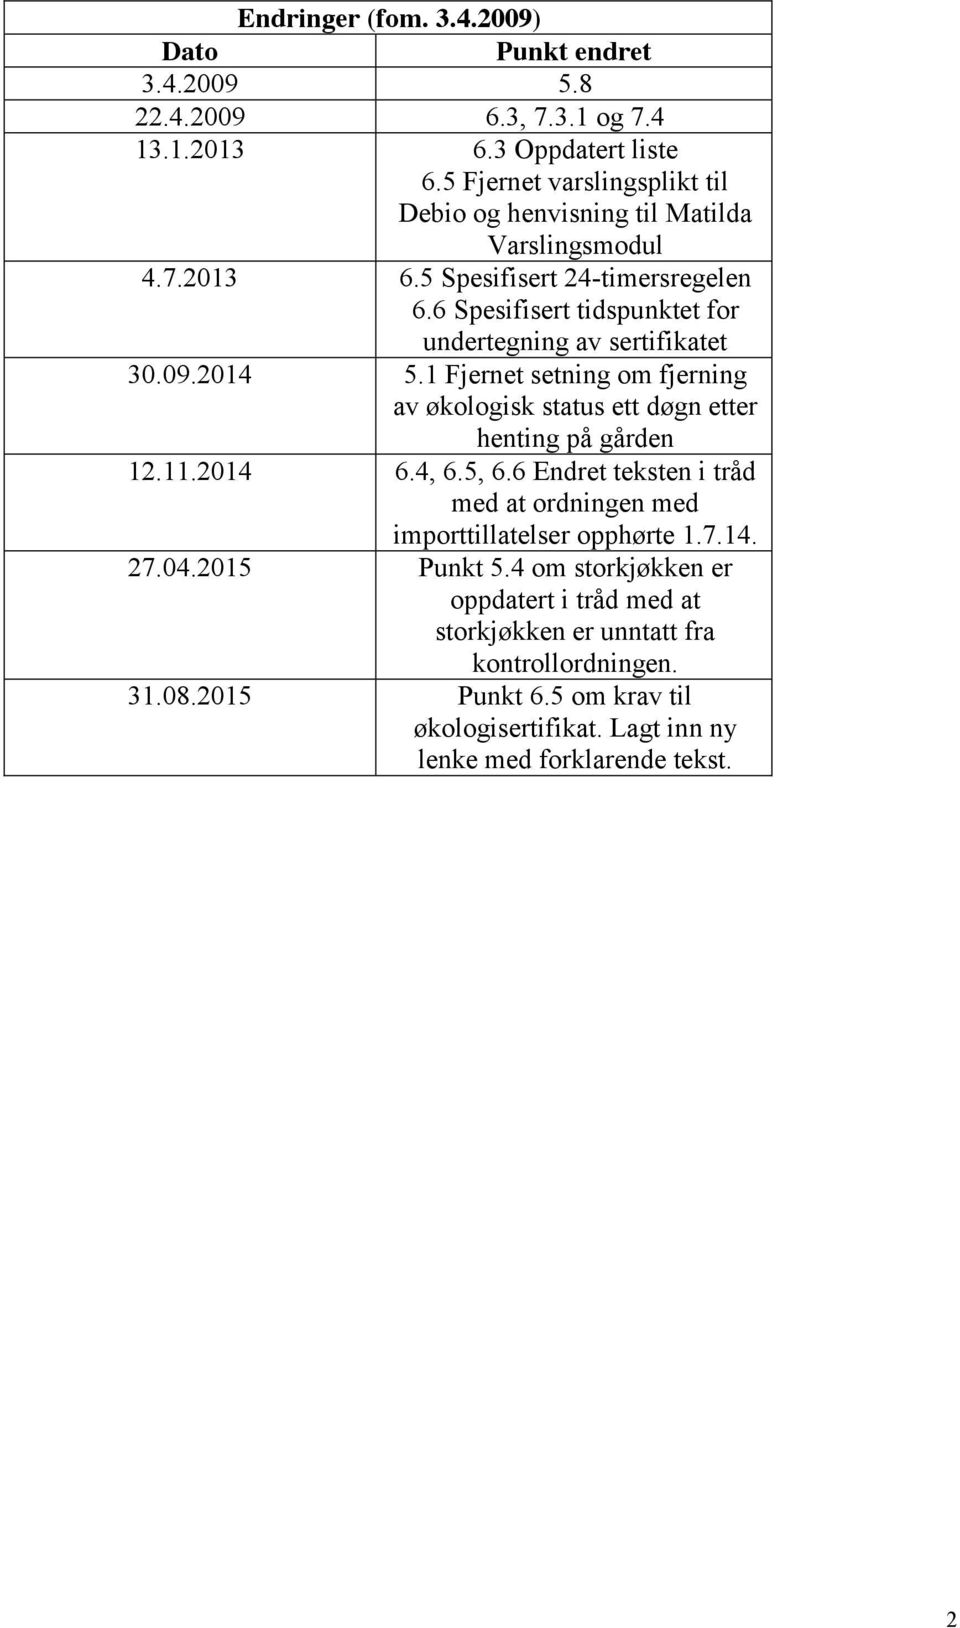 6 Spesifisert tidspunktet for undertegning av sertifikatet 30.09.2014 5.1 Fjernet setning om fjerning av økologisk status ett døgn etter henting på gården 12.11.2014 6.4, 6.